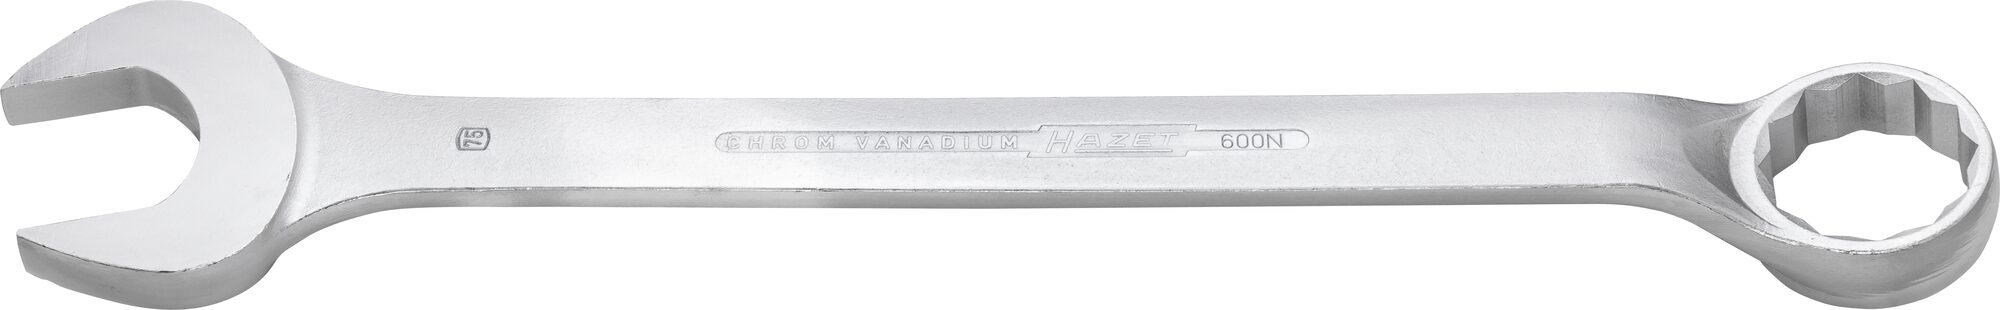 HAZET Ring-Maulschlüssel 600N-75 · Außen Doppel-Sechskant Profil · 75 mm